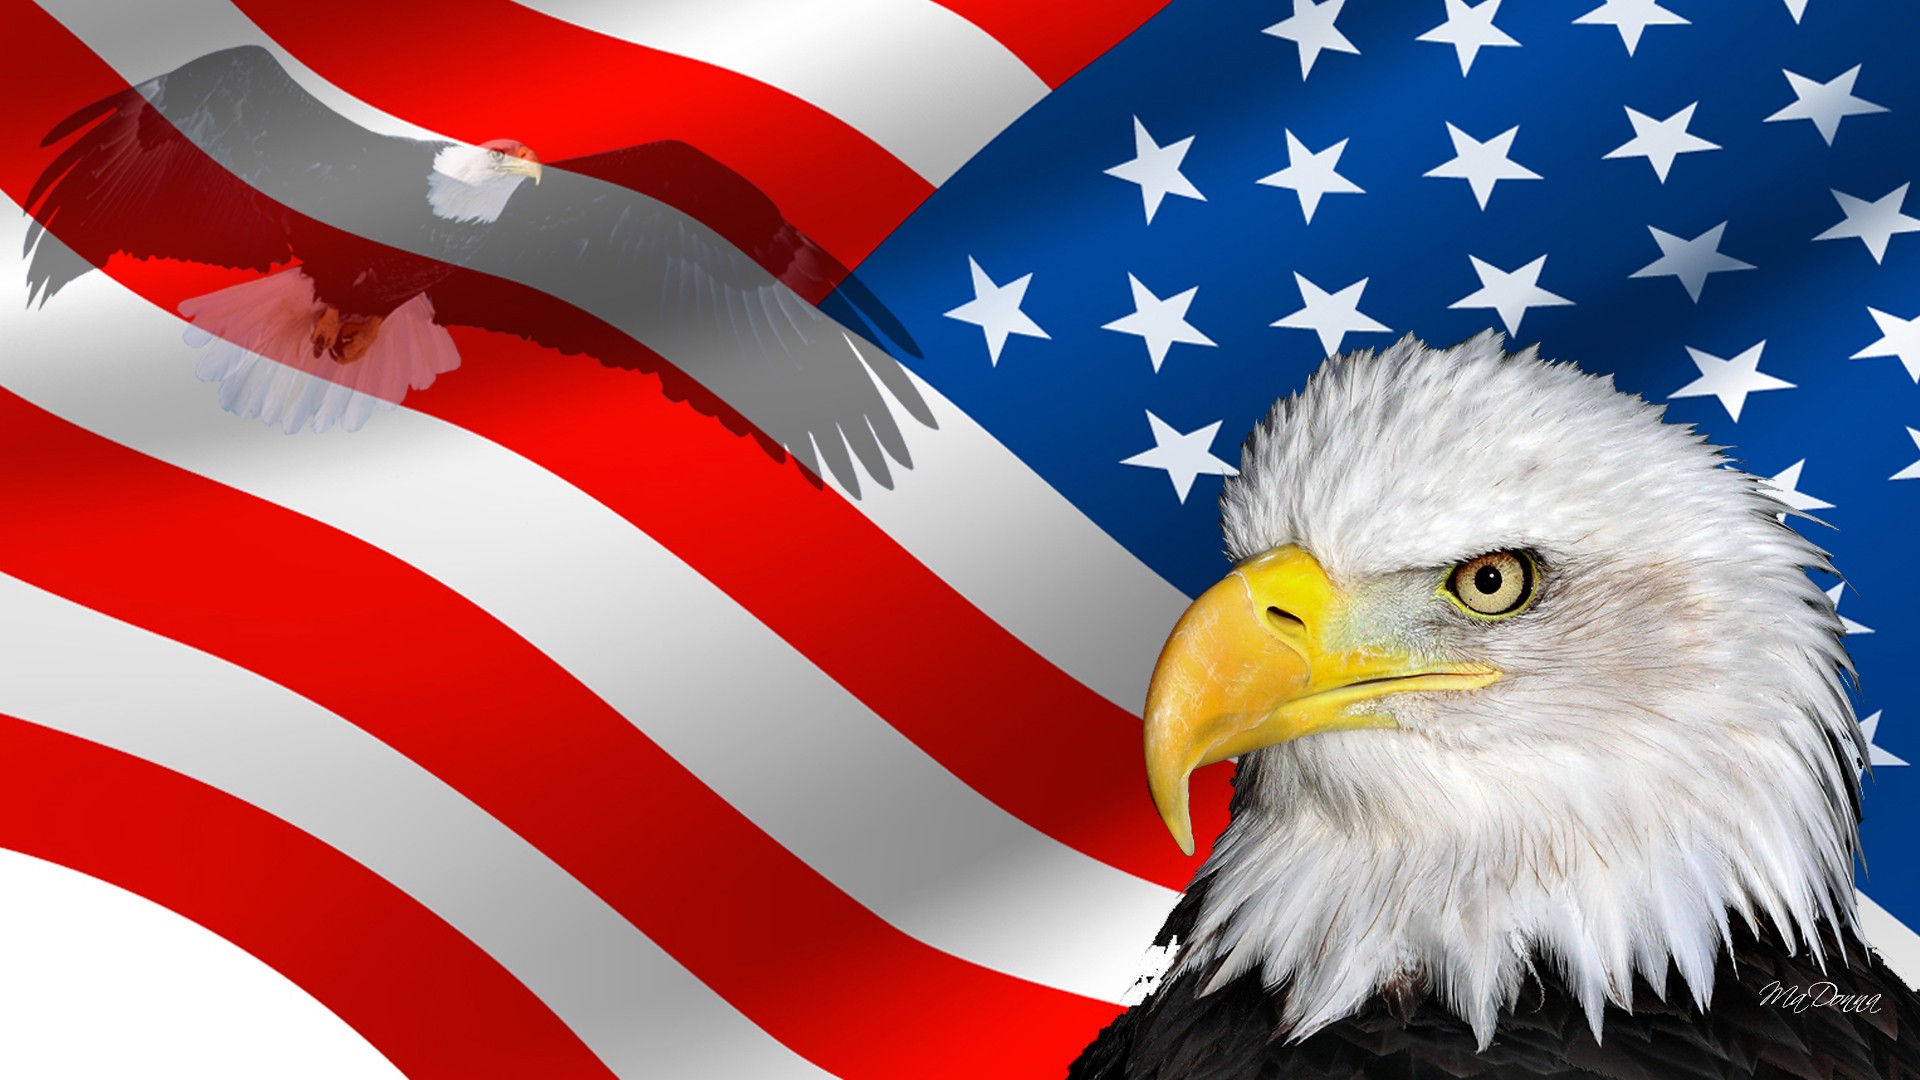 アメリカの壁紙,白頭ワシ,アメリカ合衆国の旗,鷲,猛禽,ウツボカズラ